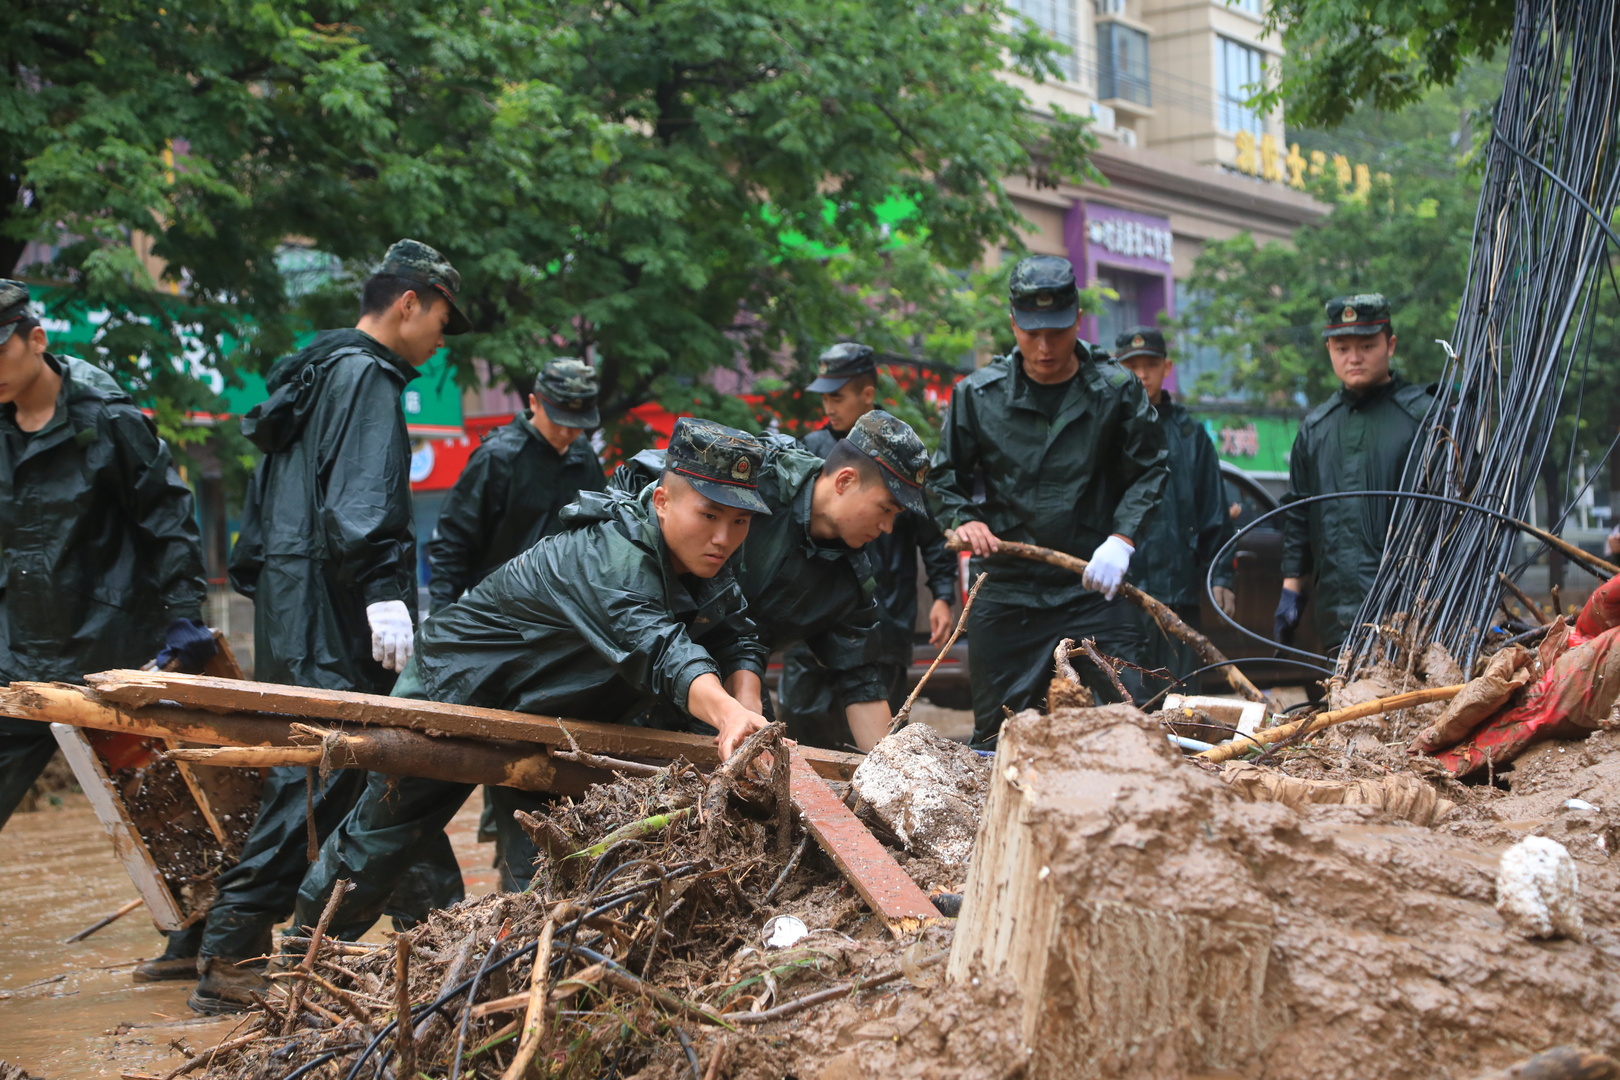 مدينة تشنغتشو الصينية تبدأ عمليات التنظيف بعد عواصف قتلت 33 شخصا